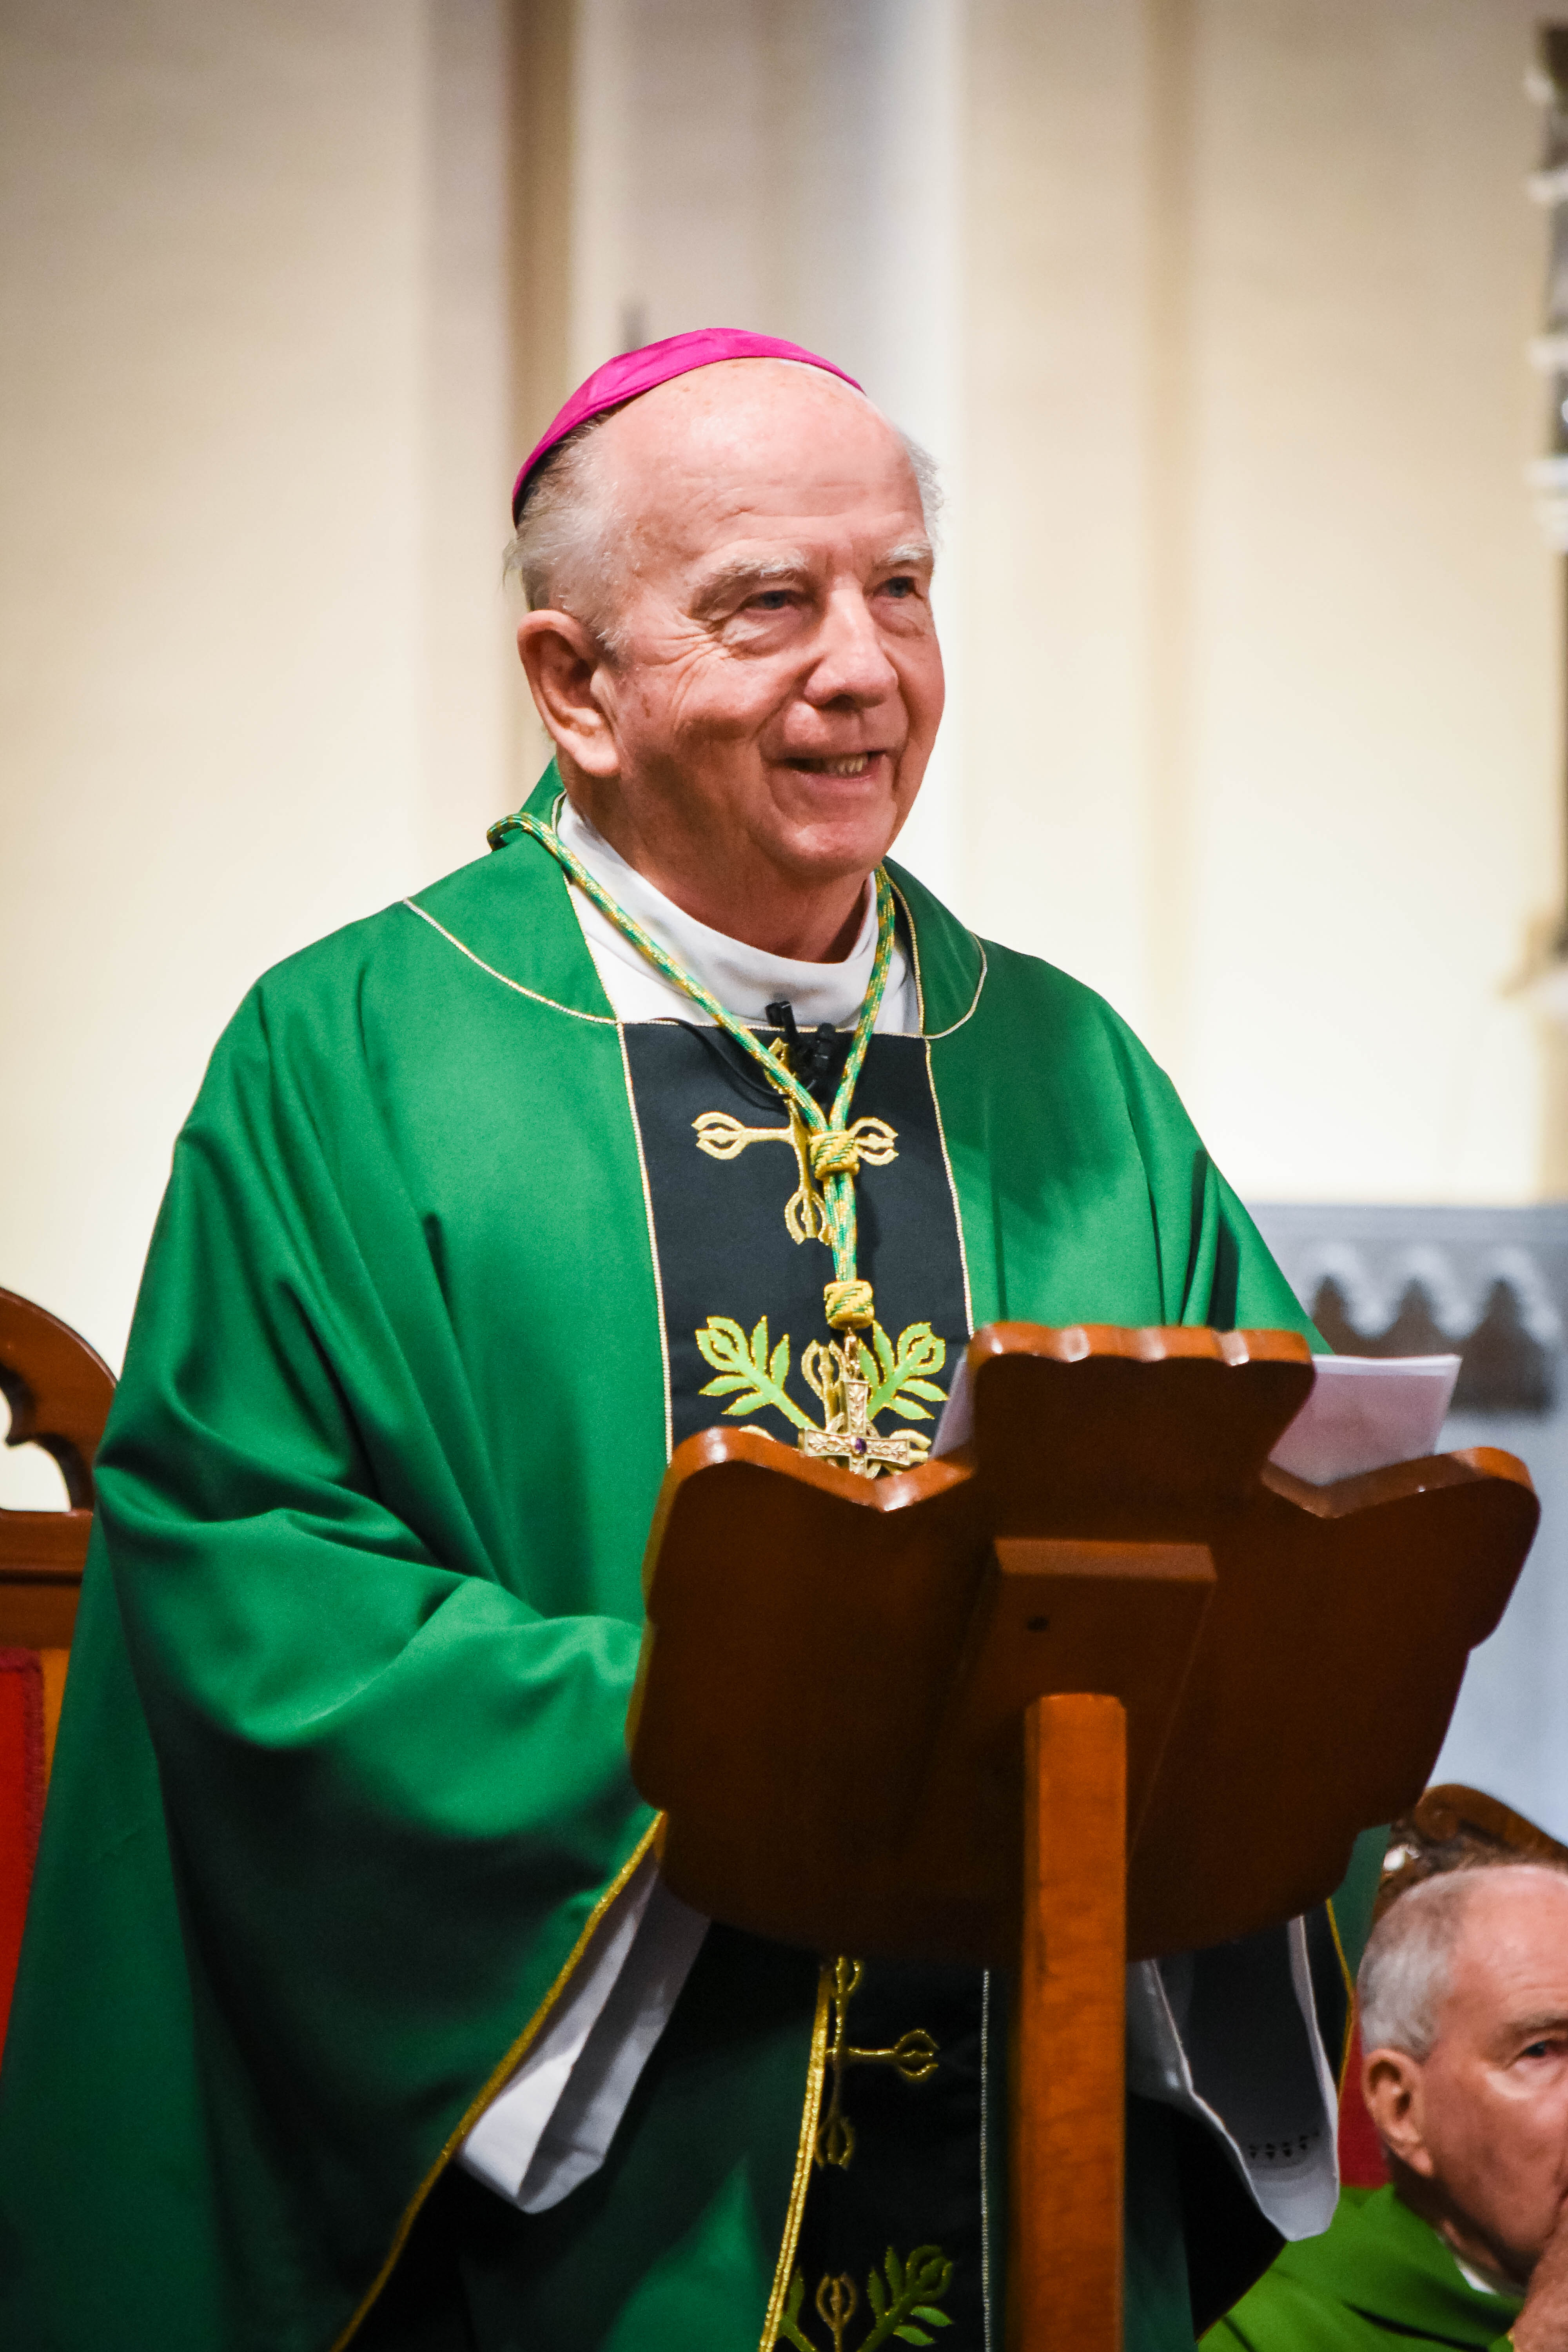 Bishop Robert McGuckin